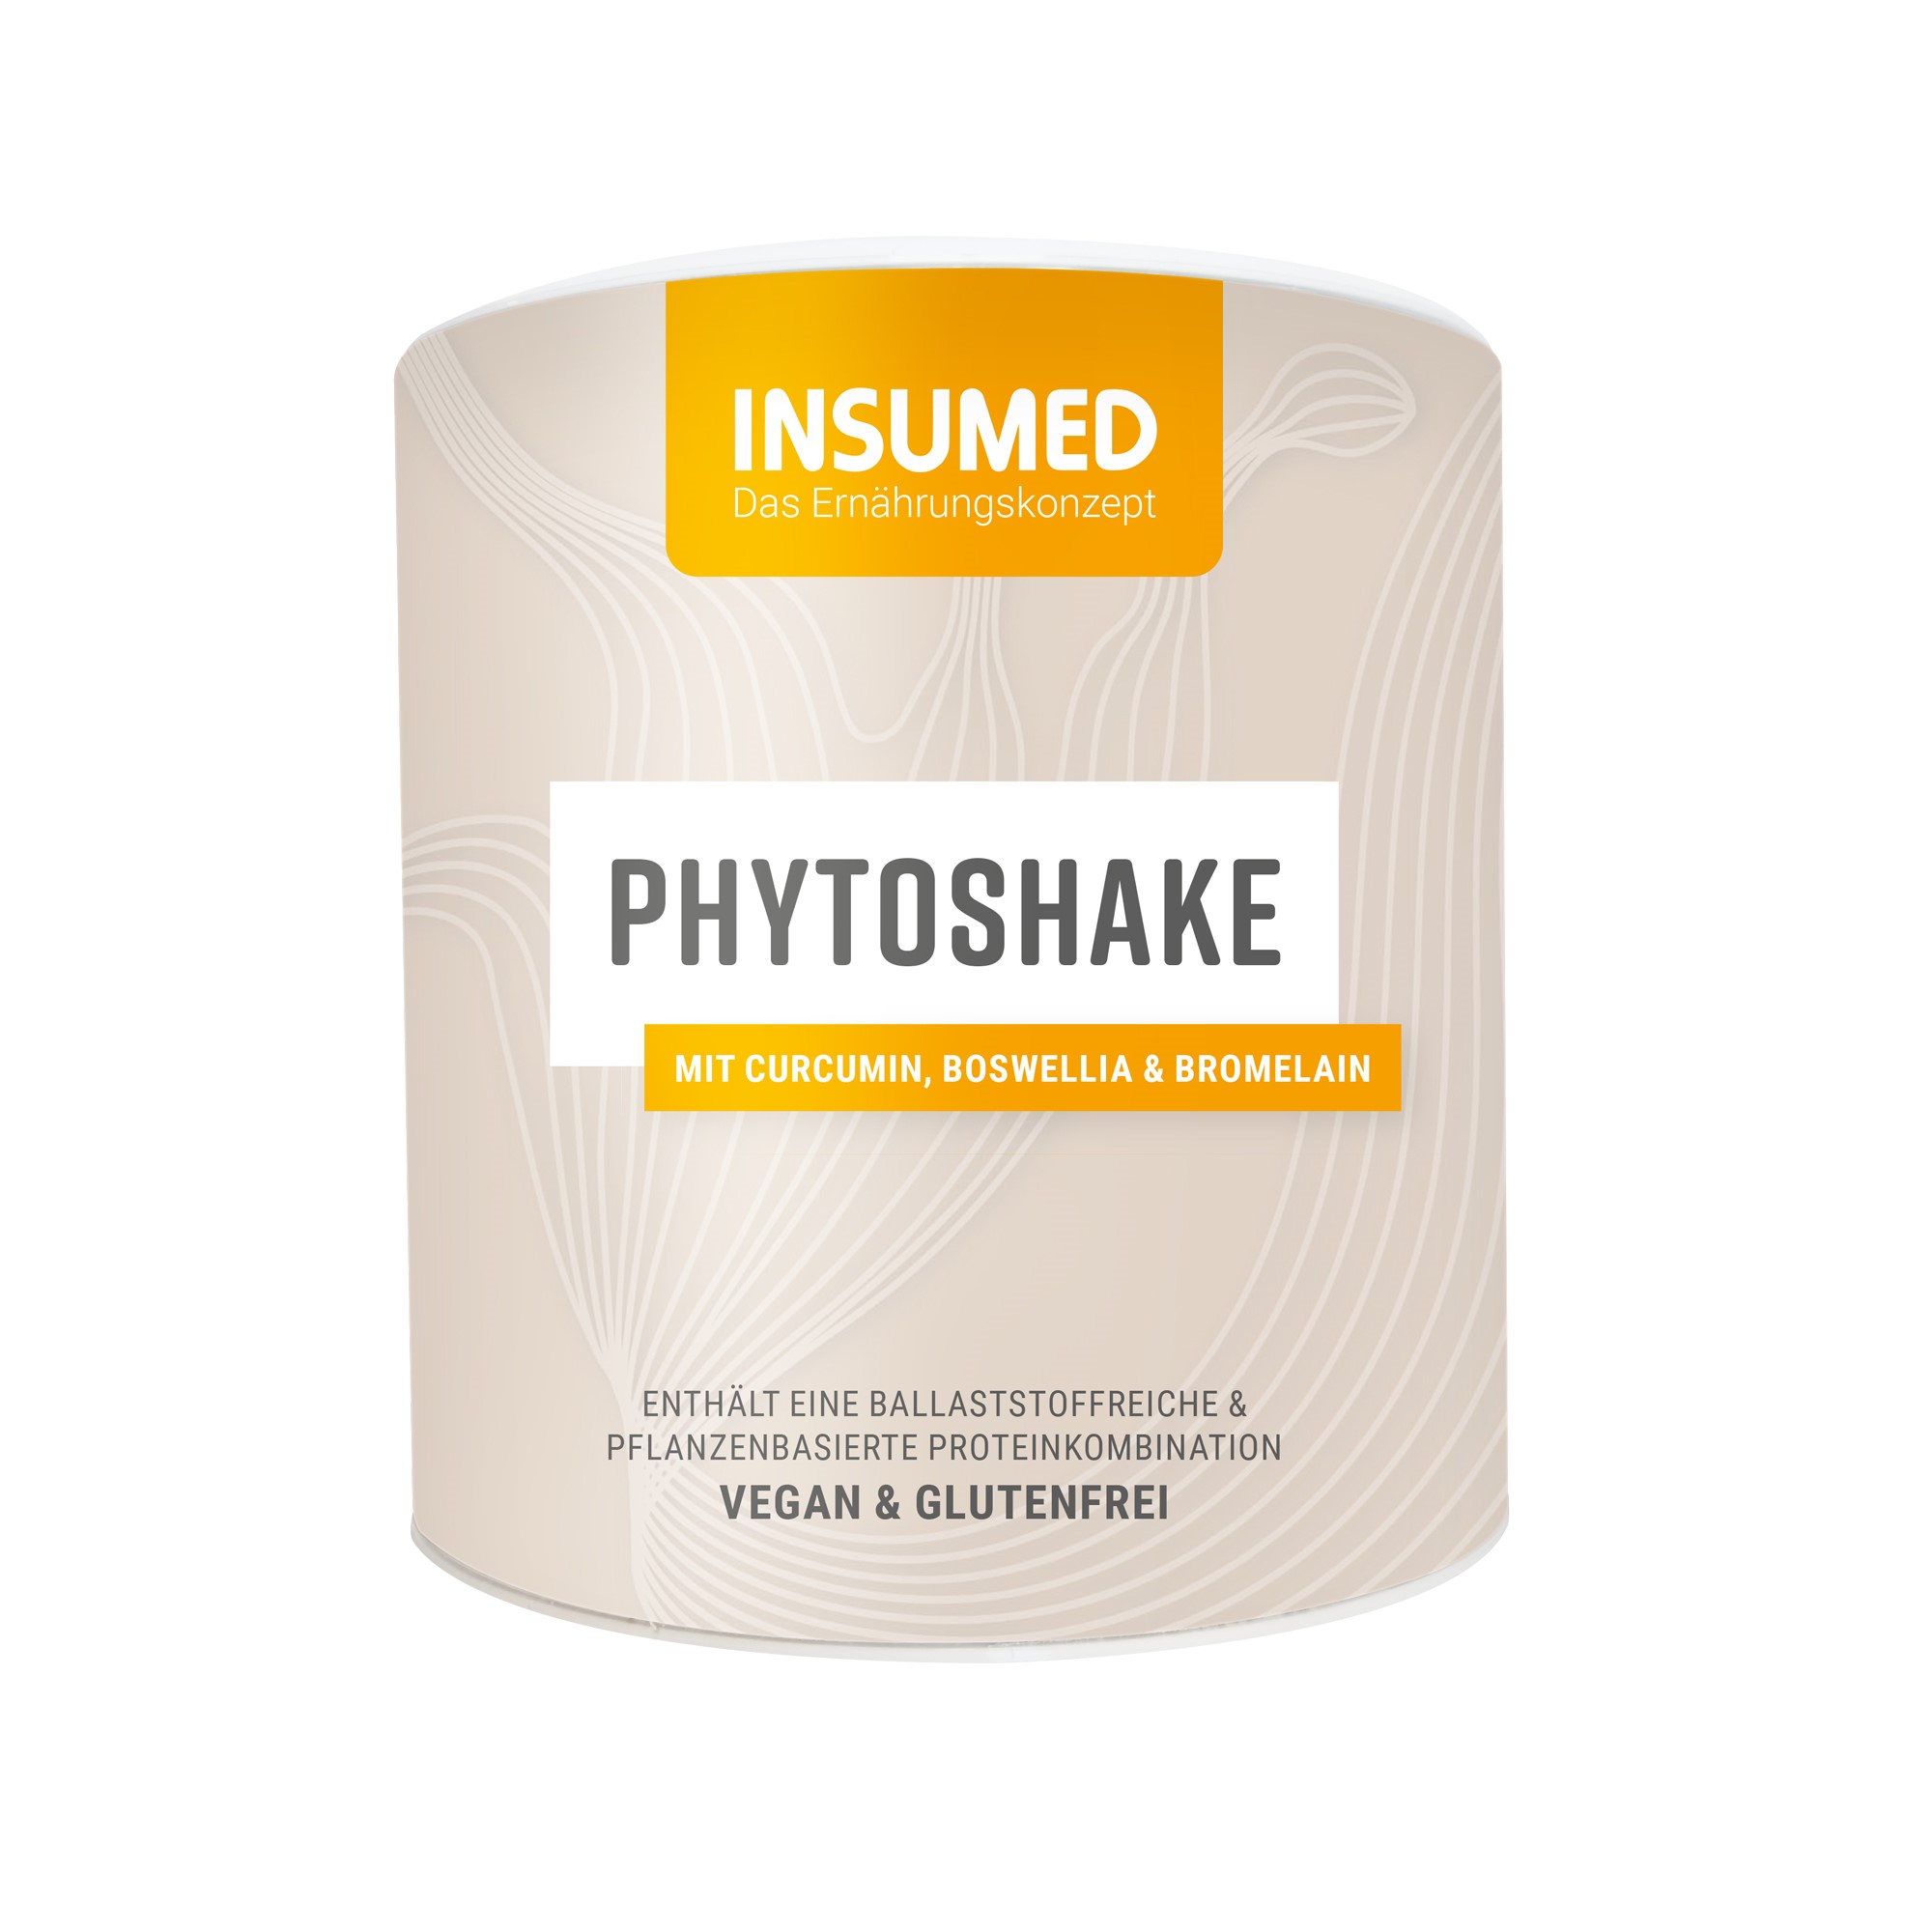 INSUMED Phytoshake Kakao-Zimt, 300g, MHD 03.2026